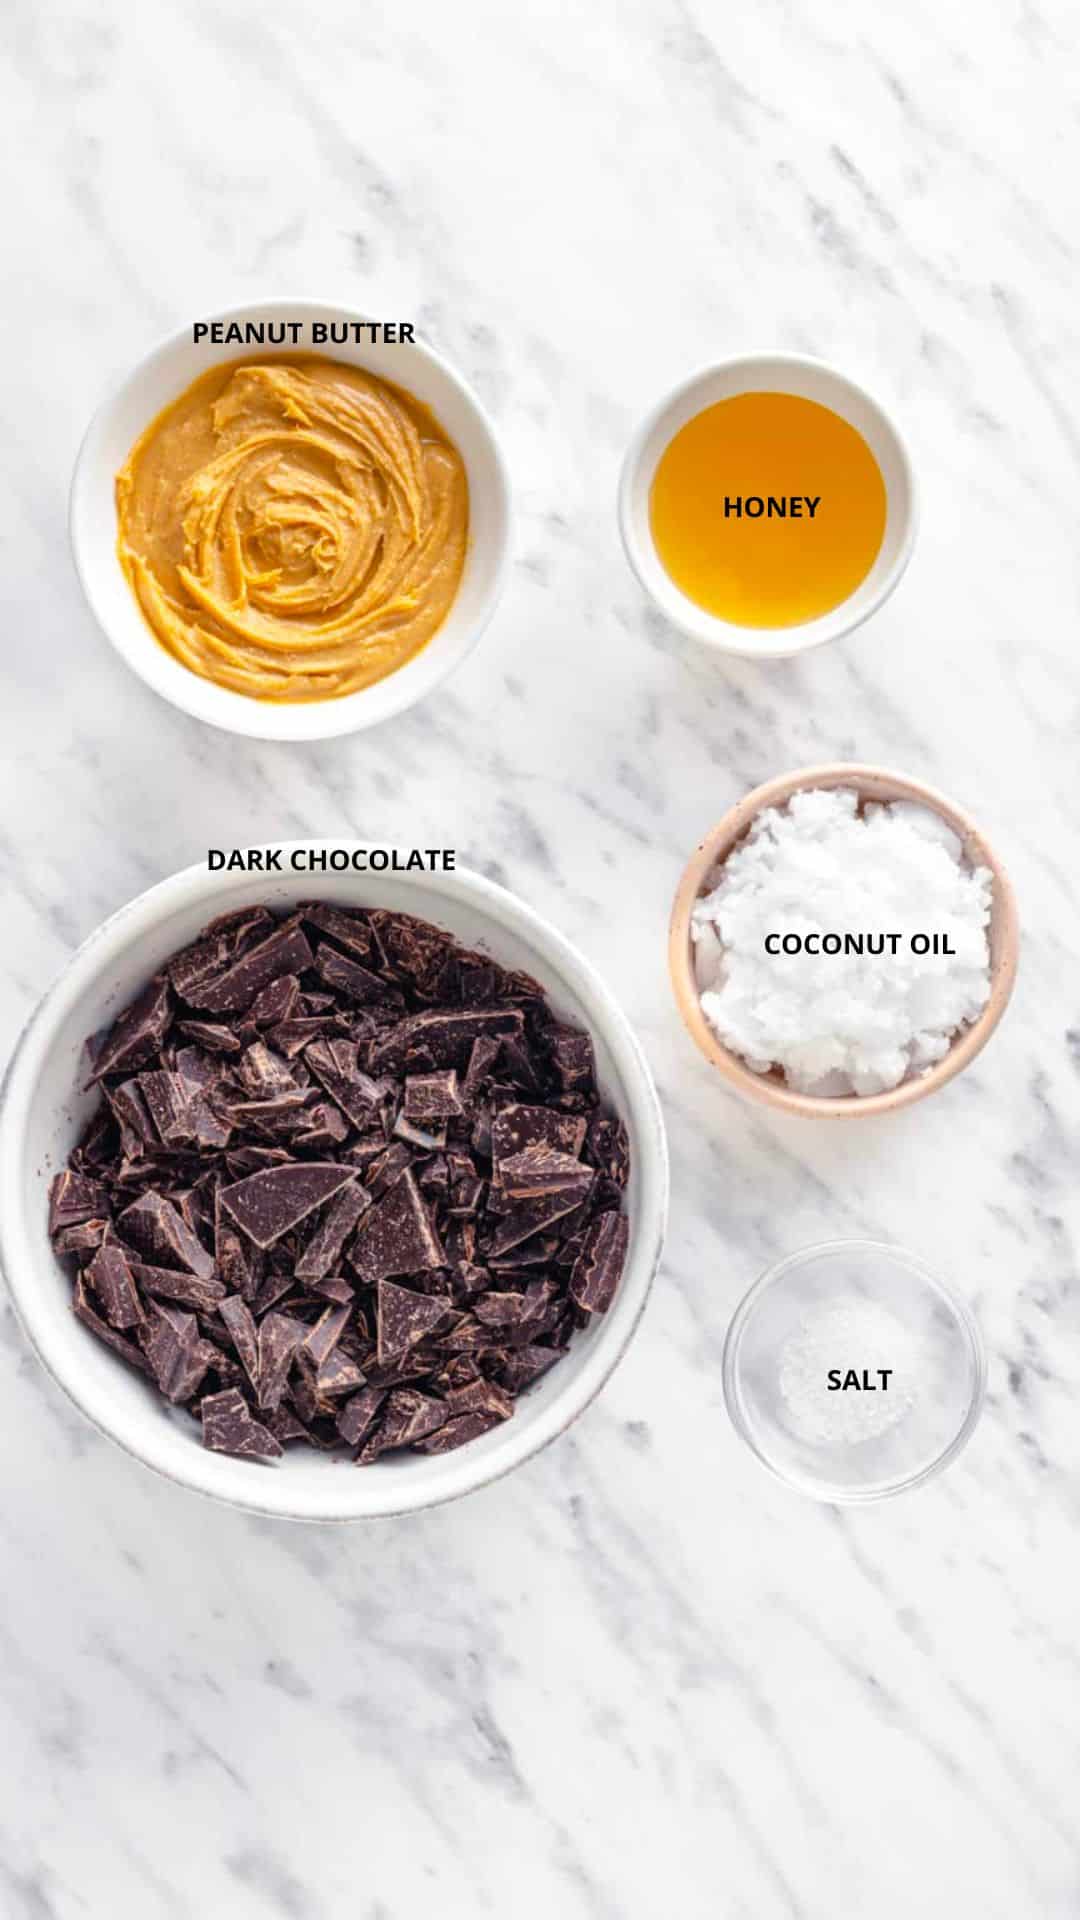 Dark chocolate peanut butter cups ingredients honey, peanut butter, coconut oil, dark chocolate, and salt.